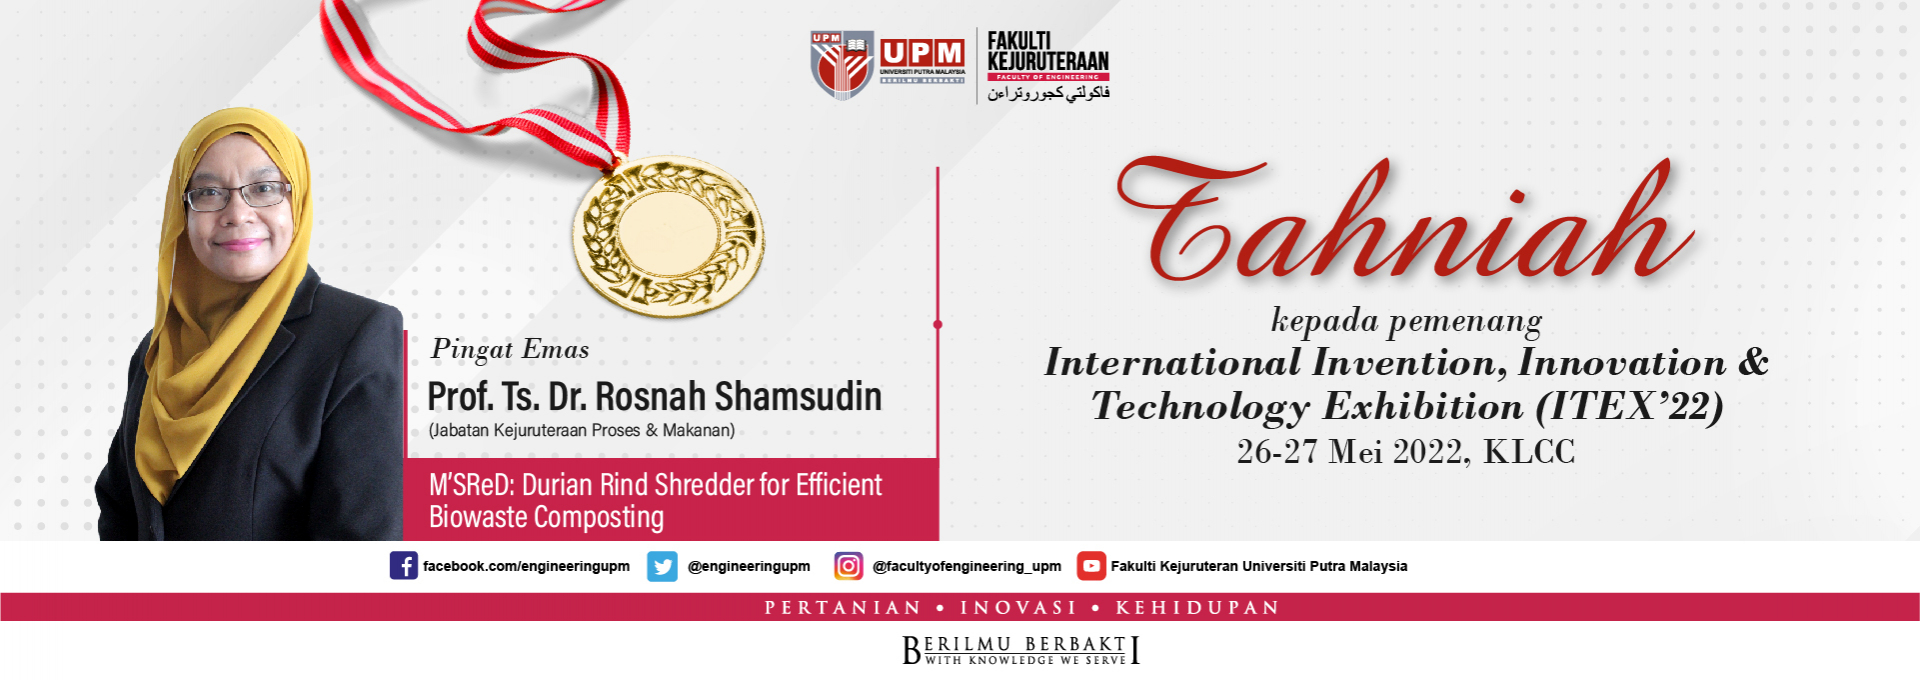 Tahniah kepada pemenang (ITEX2022)_ Prof Rosnah